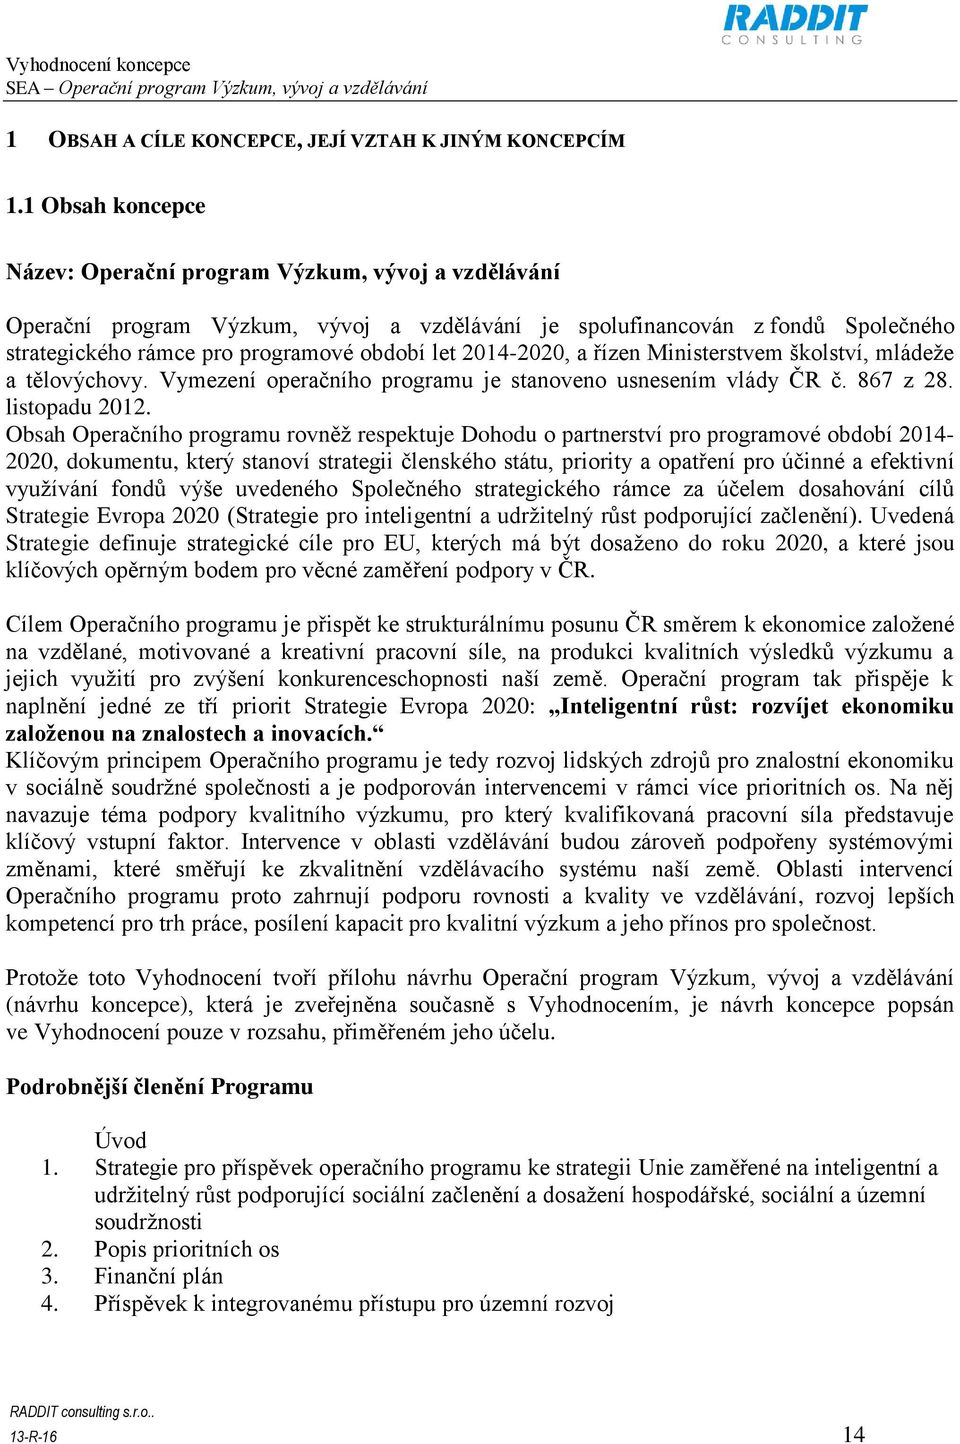 2014-2020, a řízen Ministerstvem školství, mládeže a tělovýchovy. Vymezení operačního programu je stanoveno usnesením vlády ČR č. 867 z 28. listopadu 2012.